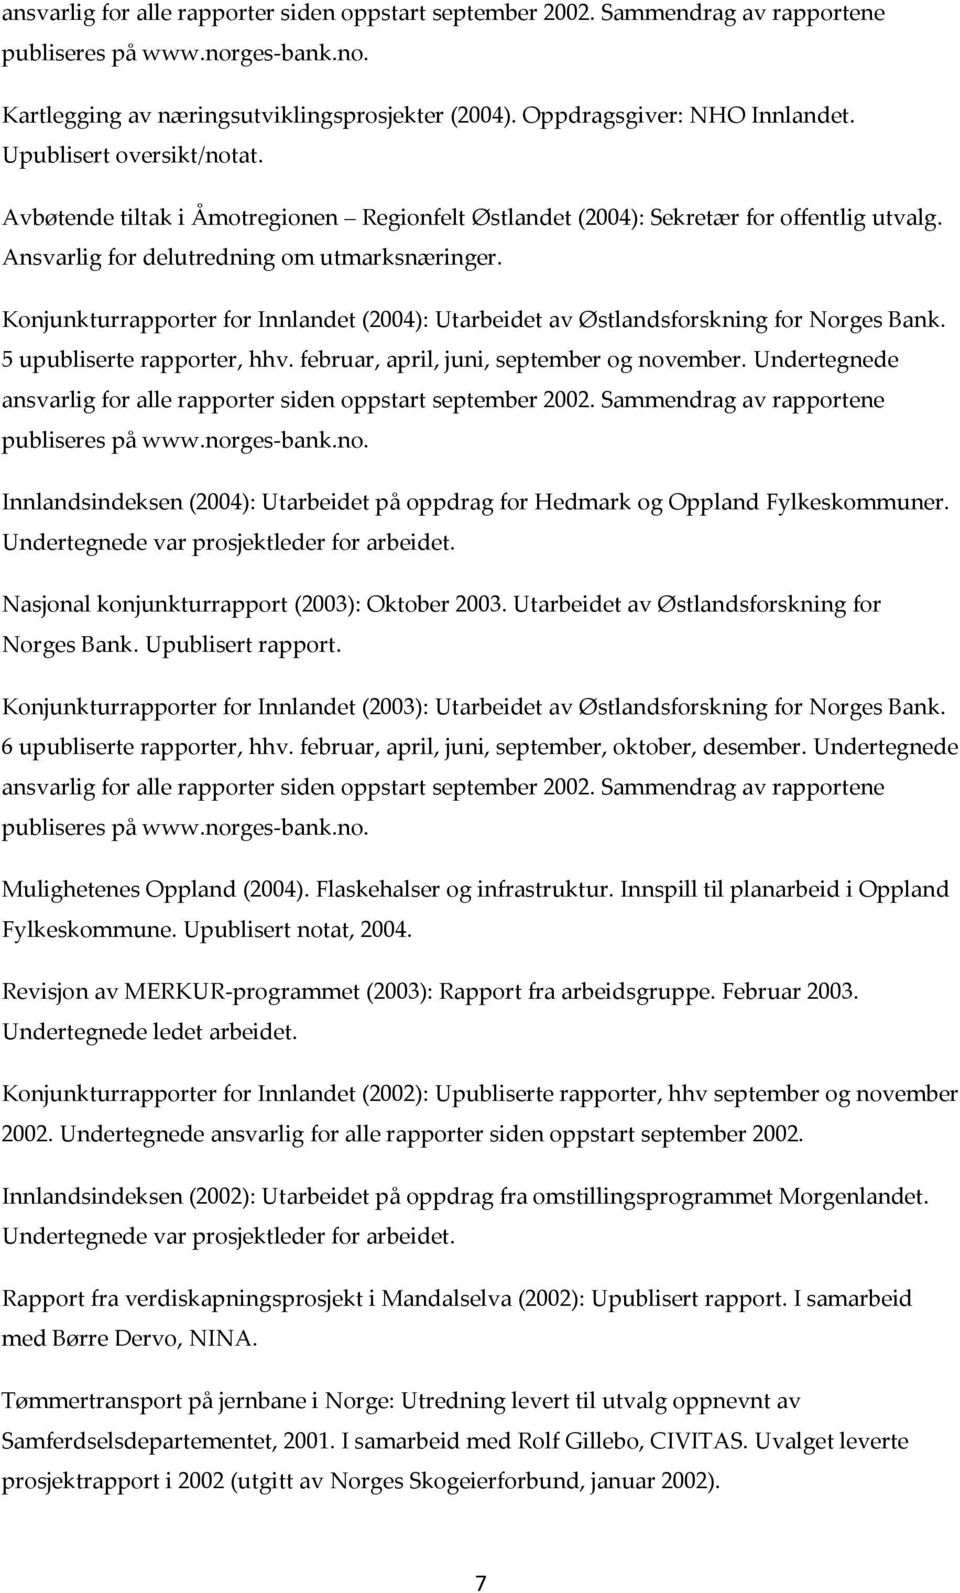 Konjunkturrapporter for Innlandet (2004): Utarbeidet av Østlandsforskning for Norges Bank. 5 upubliserte rapporter, hhv. februar, april, juni, september og november.